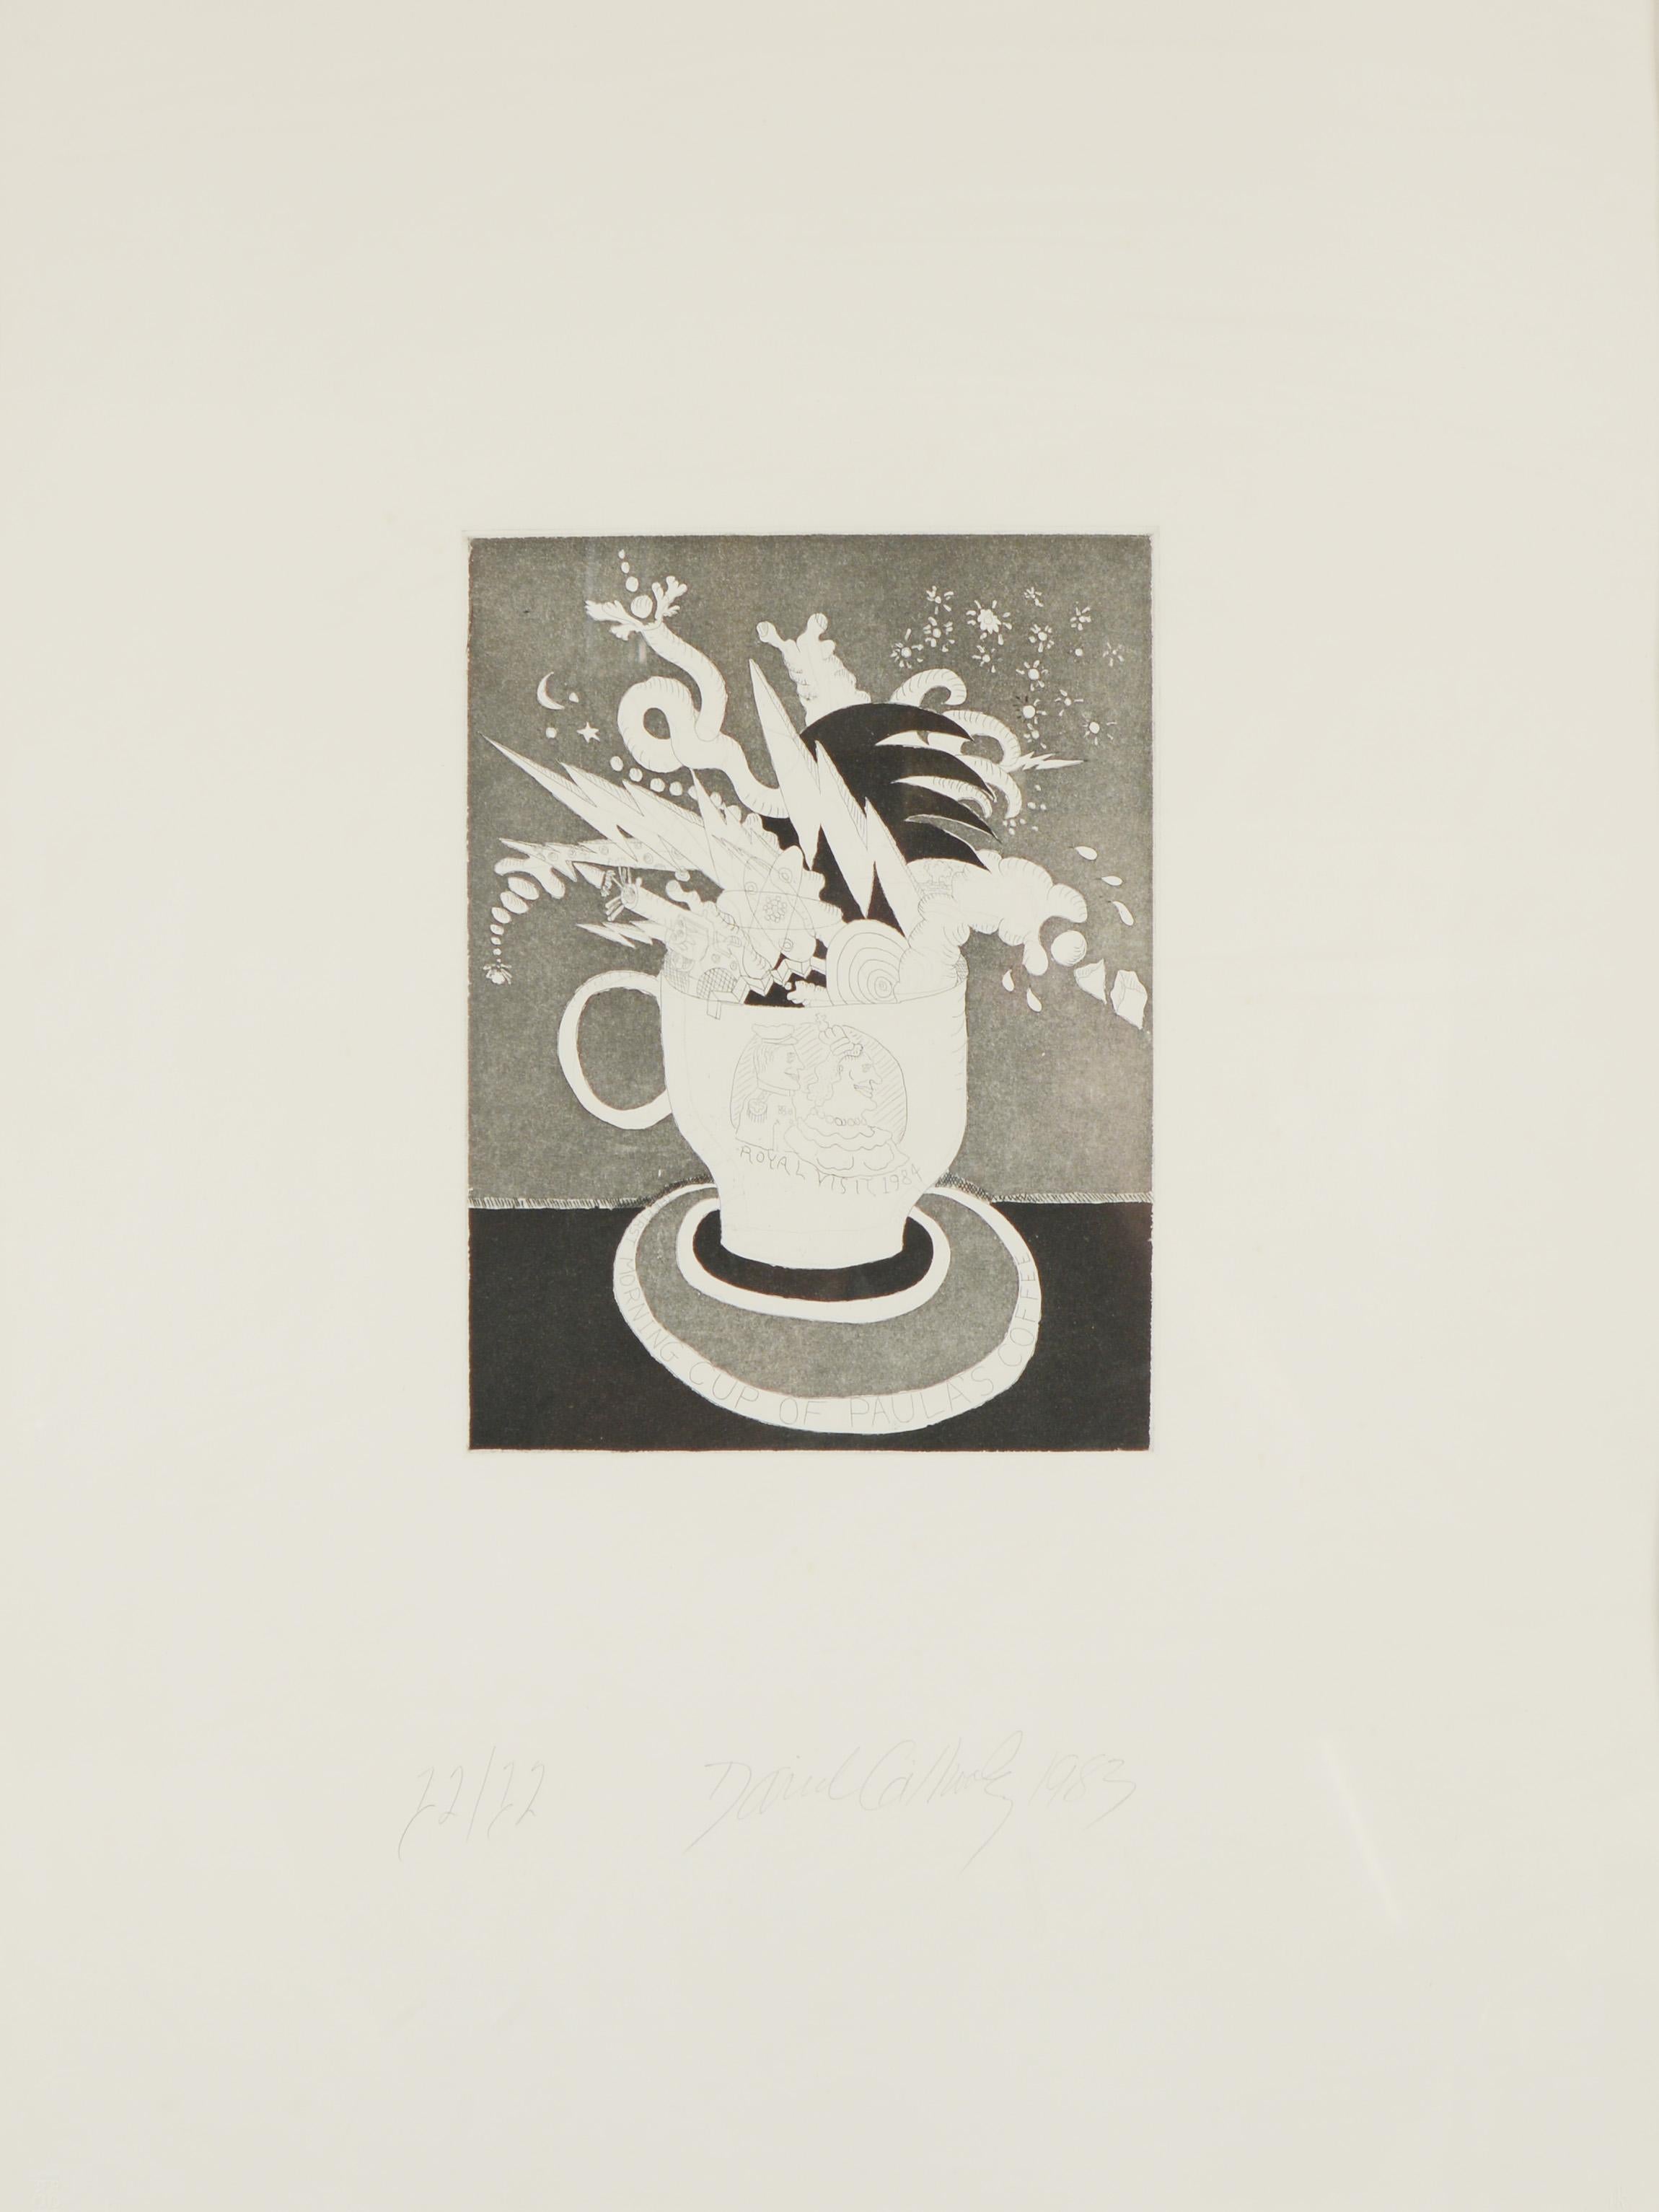 Gravure intitulée La première tasse matinale du café de Paula par David Gilhooly (1943-2013). Le tirage est daté de 1983 et est numéroté 12 / 12. Ce document a été publié par 3EP Ltd. Elle a probablement été encadrée au moment de la réalisation de